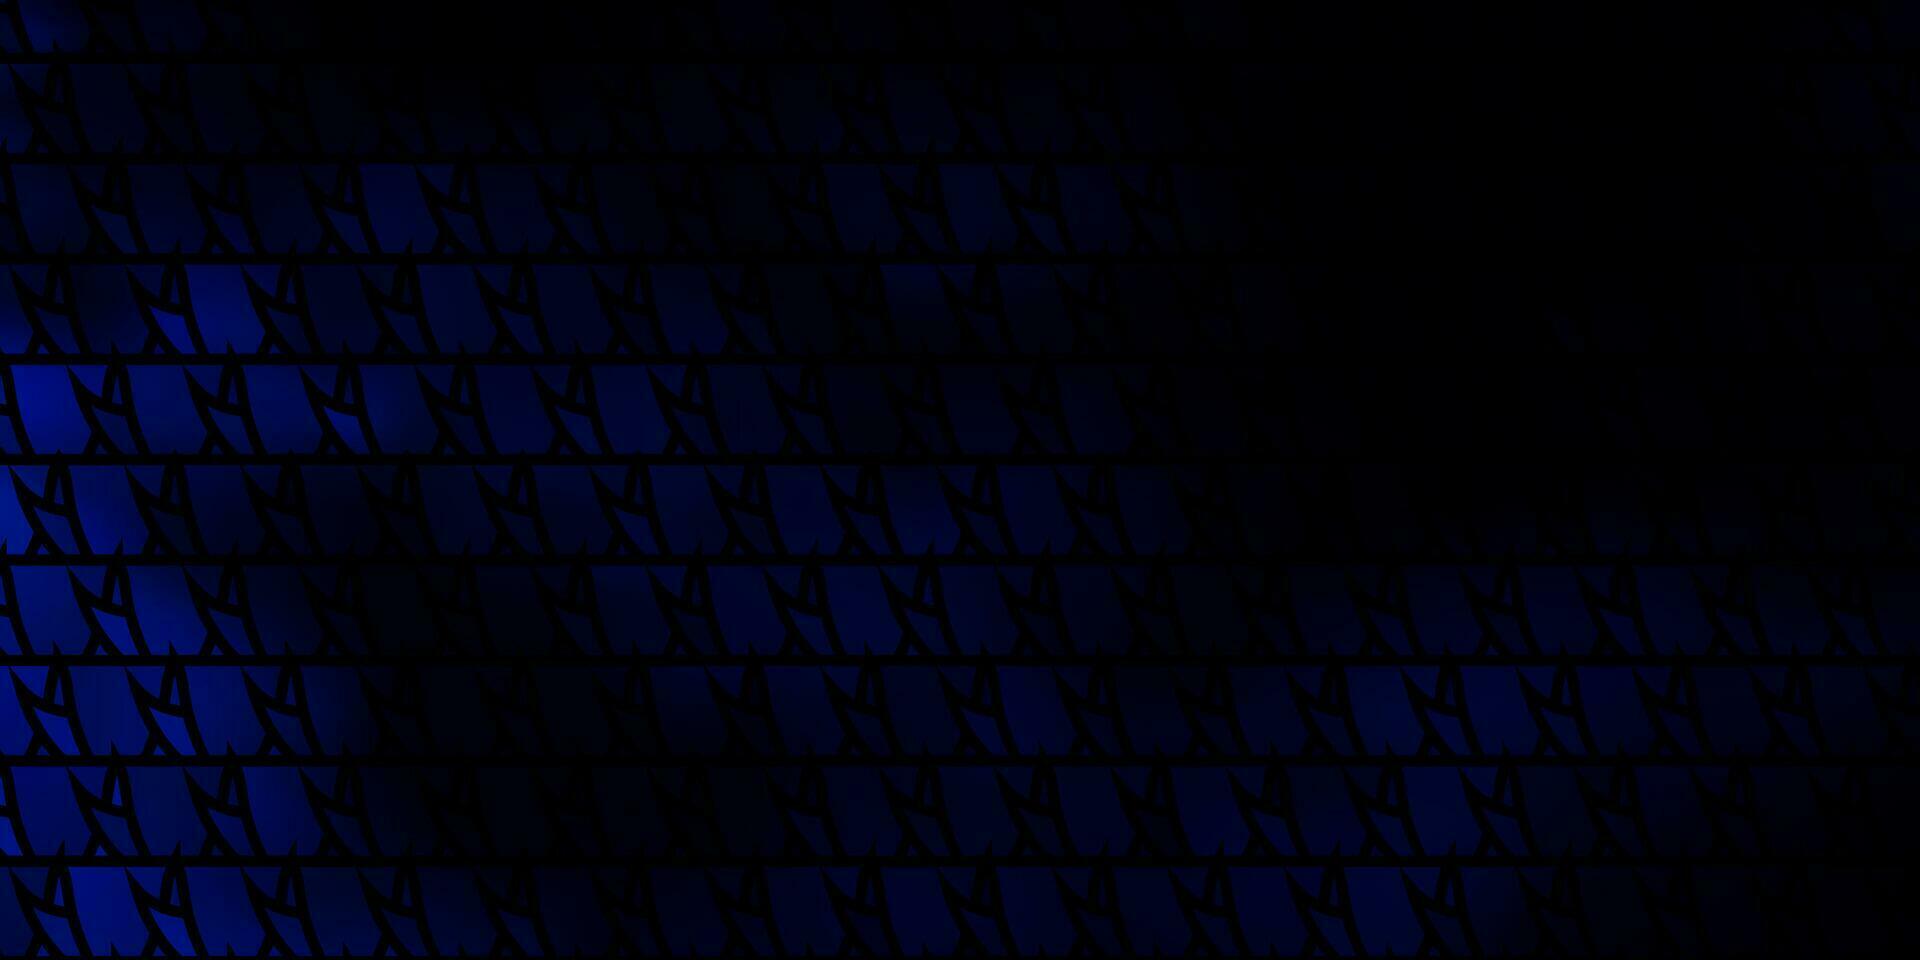 Fondo de vector azul oscuro con estilo poligonal.